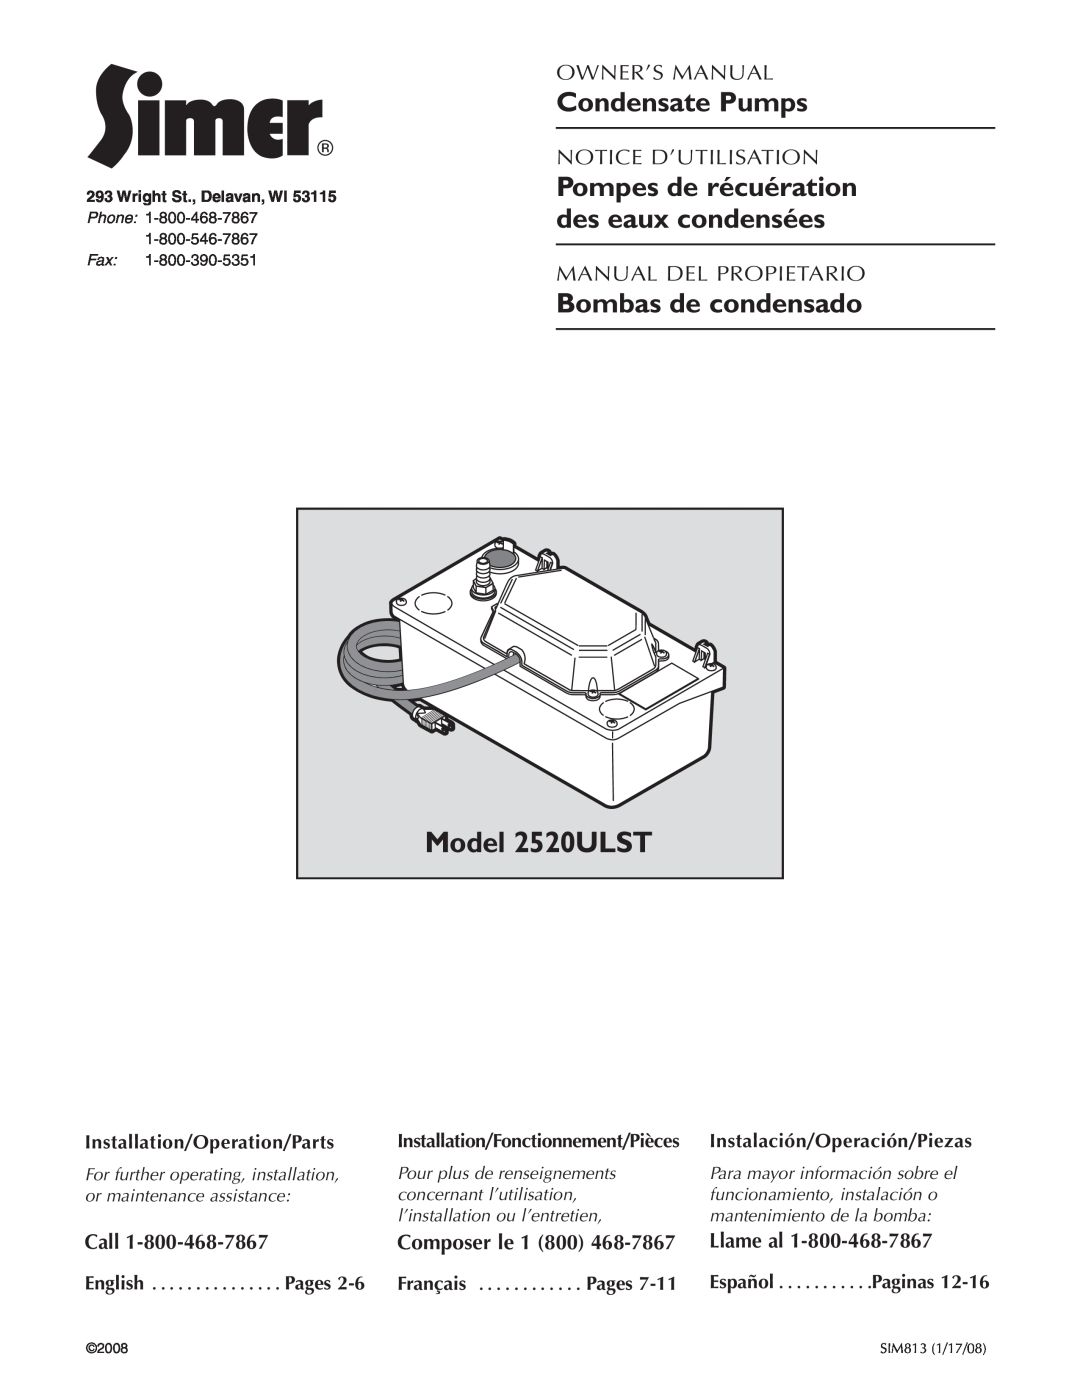 Simer Pumps 2520ULST owner manual Pompes de récuération des eaux condensées, Call, Composer le, Llame al, Paginas, Pages 